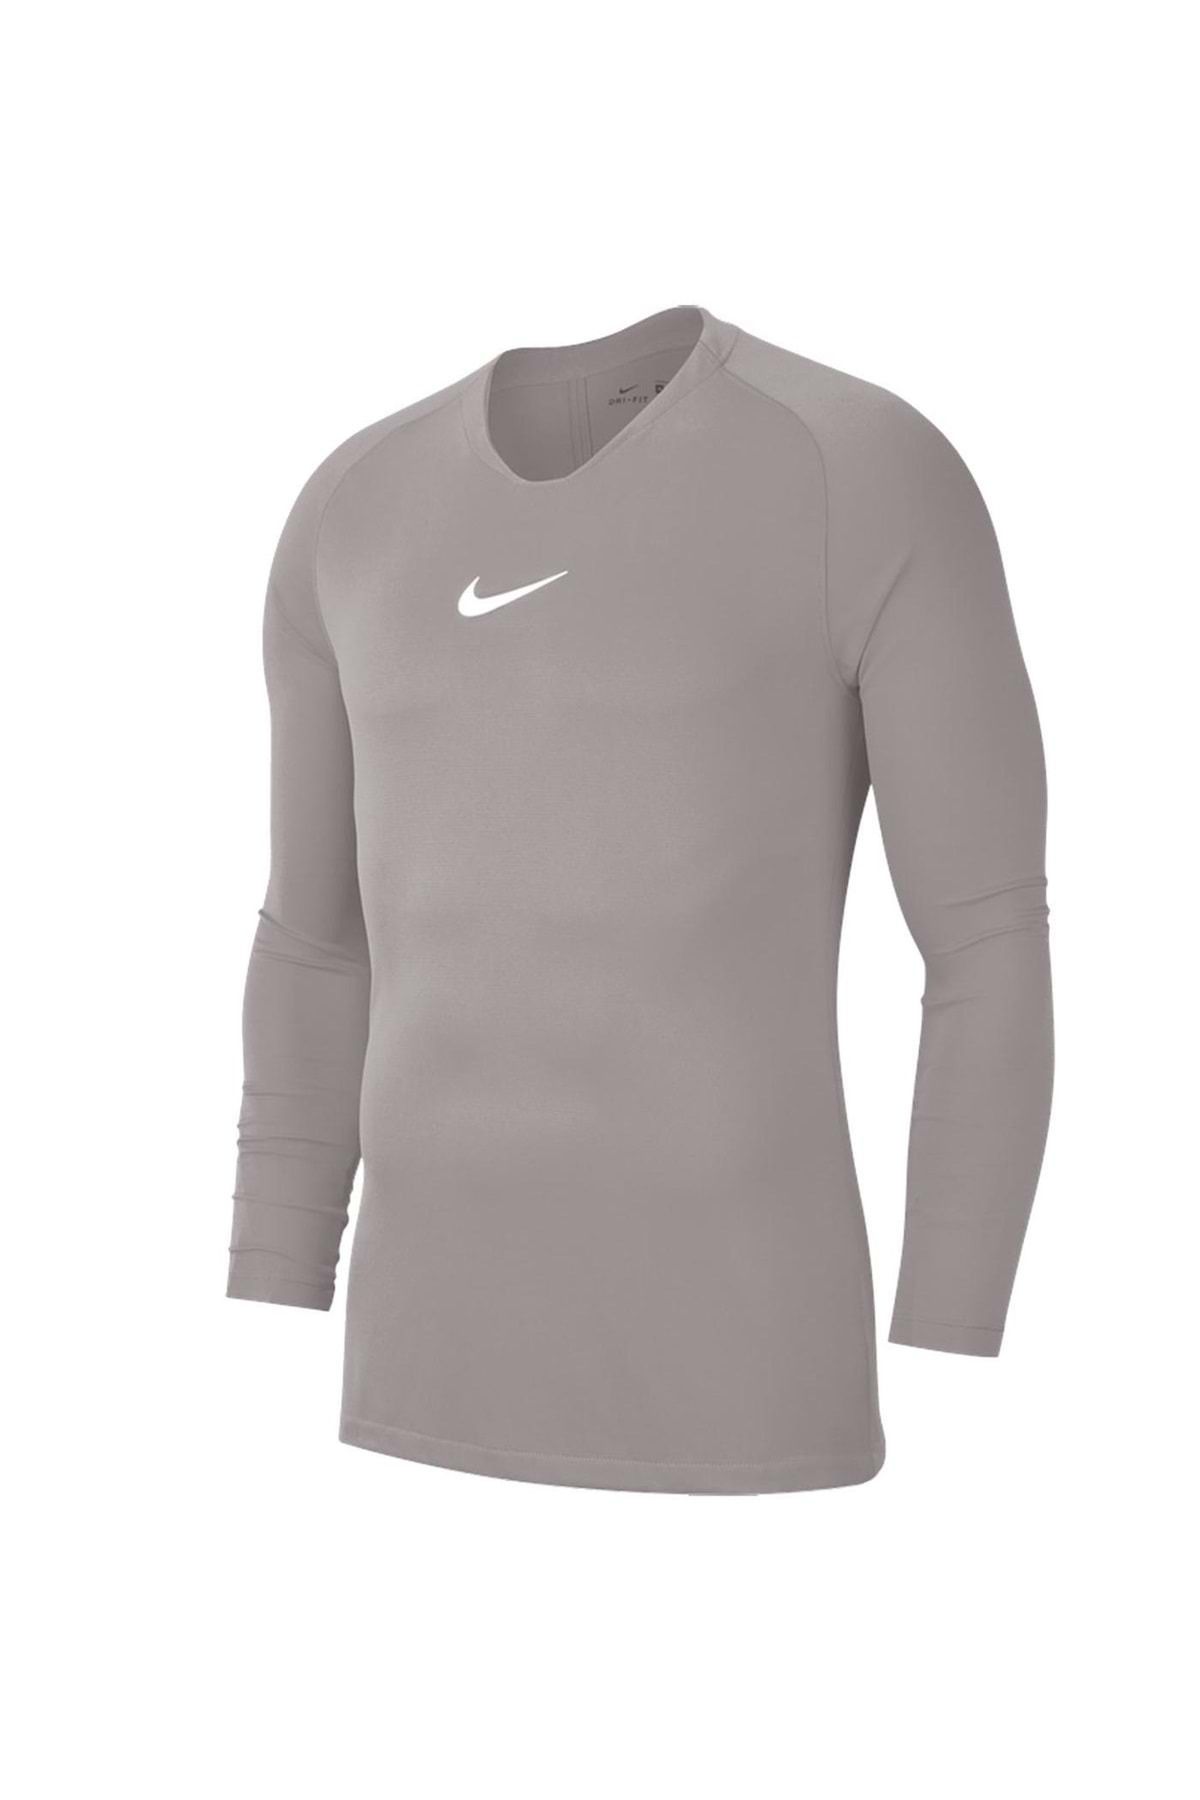 Nike Av2609-057 Dri-fit Park Erkek Uzun Kollu Tişört Futbol Forması Gri